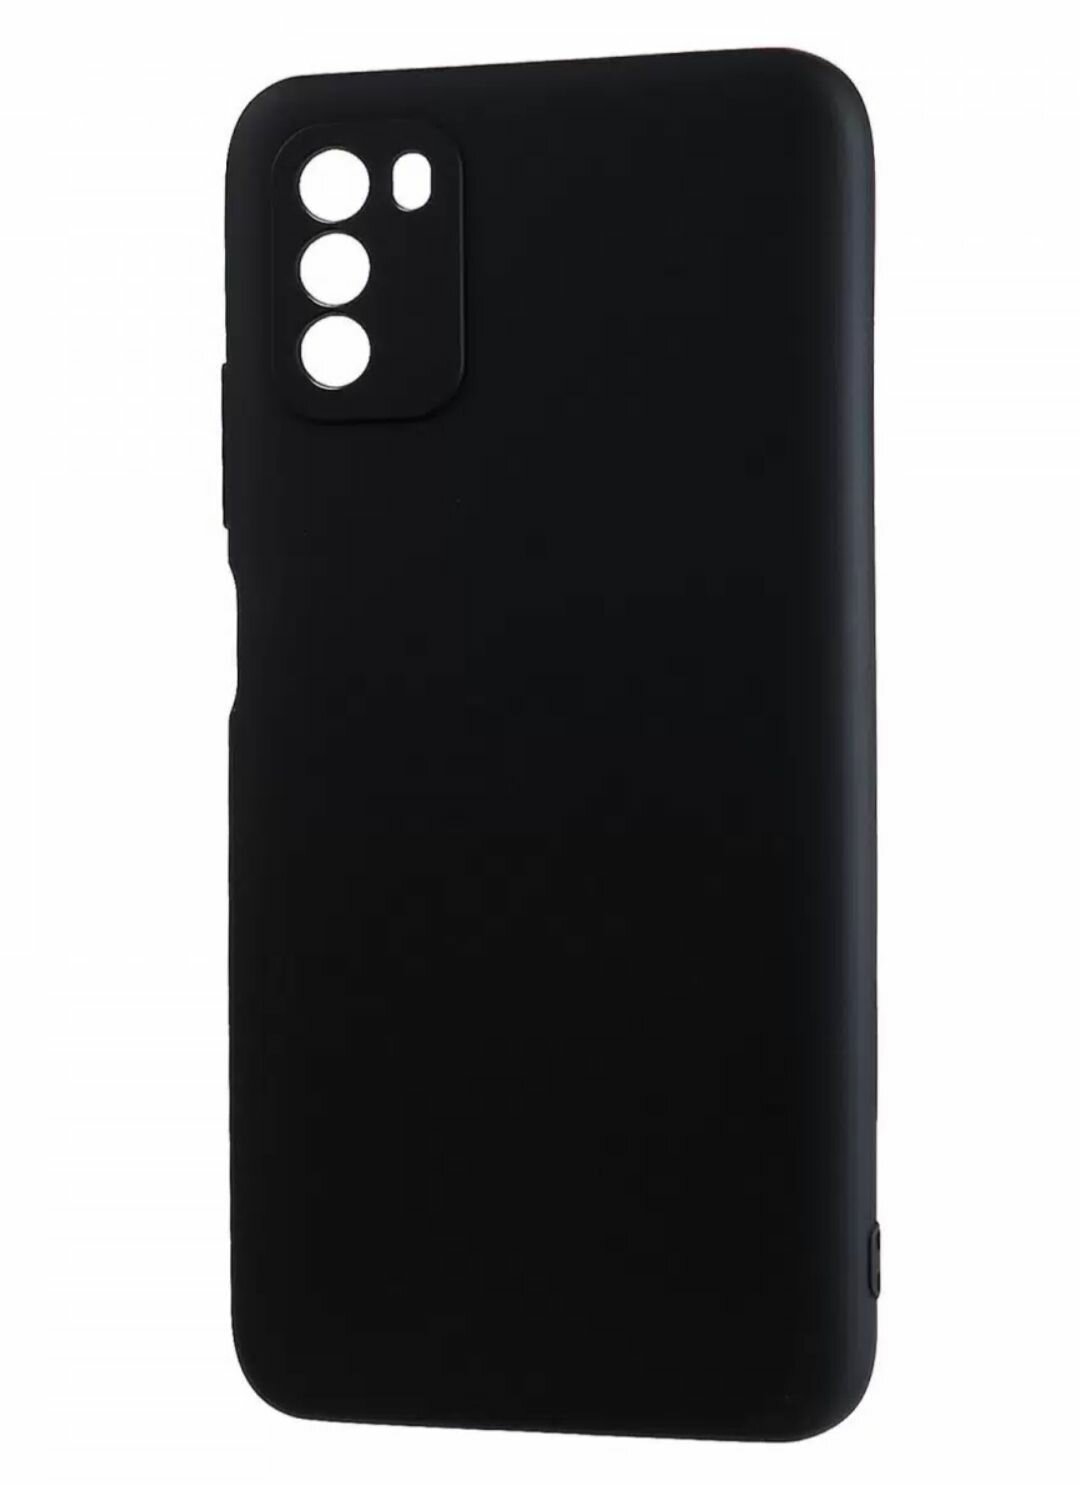 Xiaomi POCO M3 силиконовый чёрный чехол для ксиоми поко м3 сяоми накладка бампер